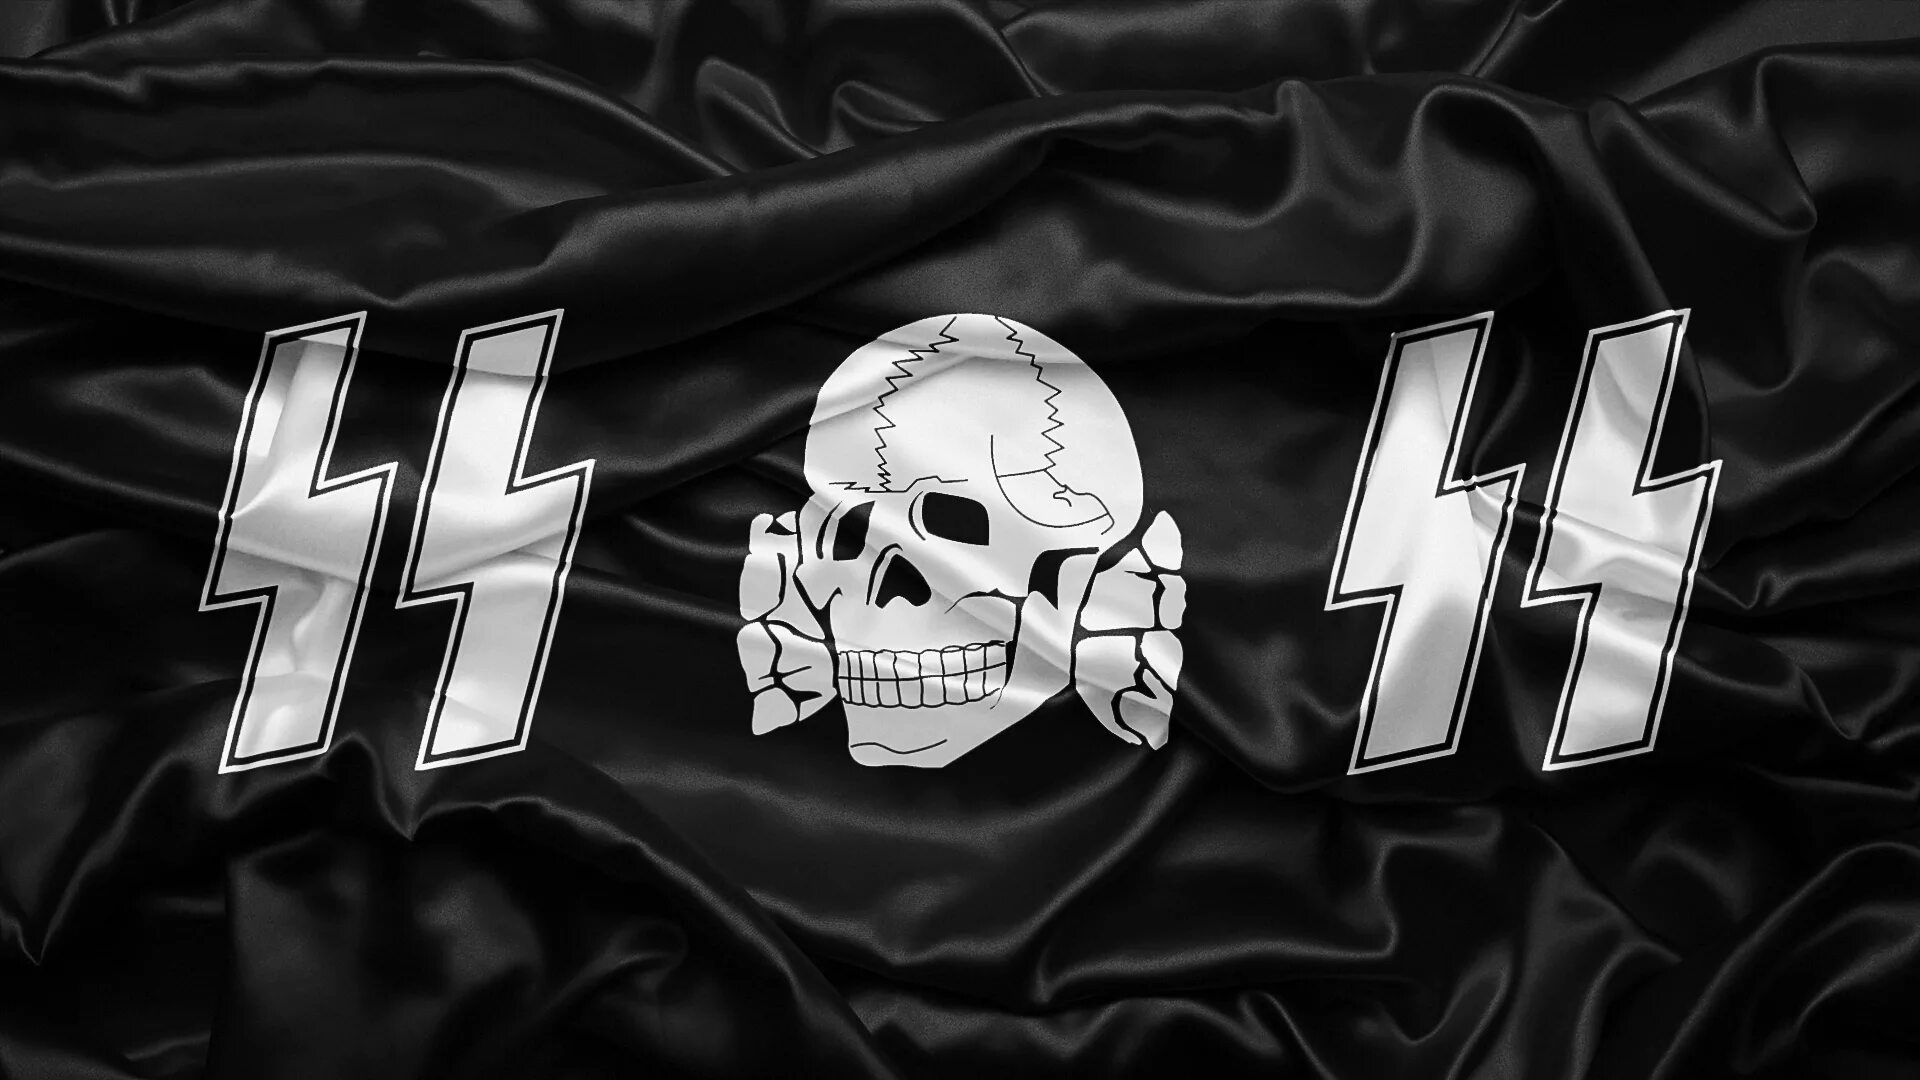 Waffen SS символика. Флаги 3 рейха и СС. Мертвая голова Тотенкопф. Флаг Ваффен СС. Сс е ра